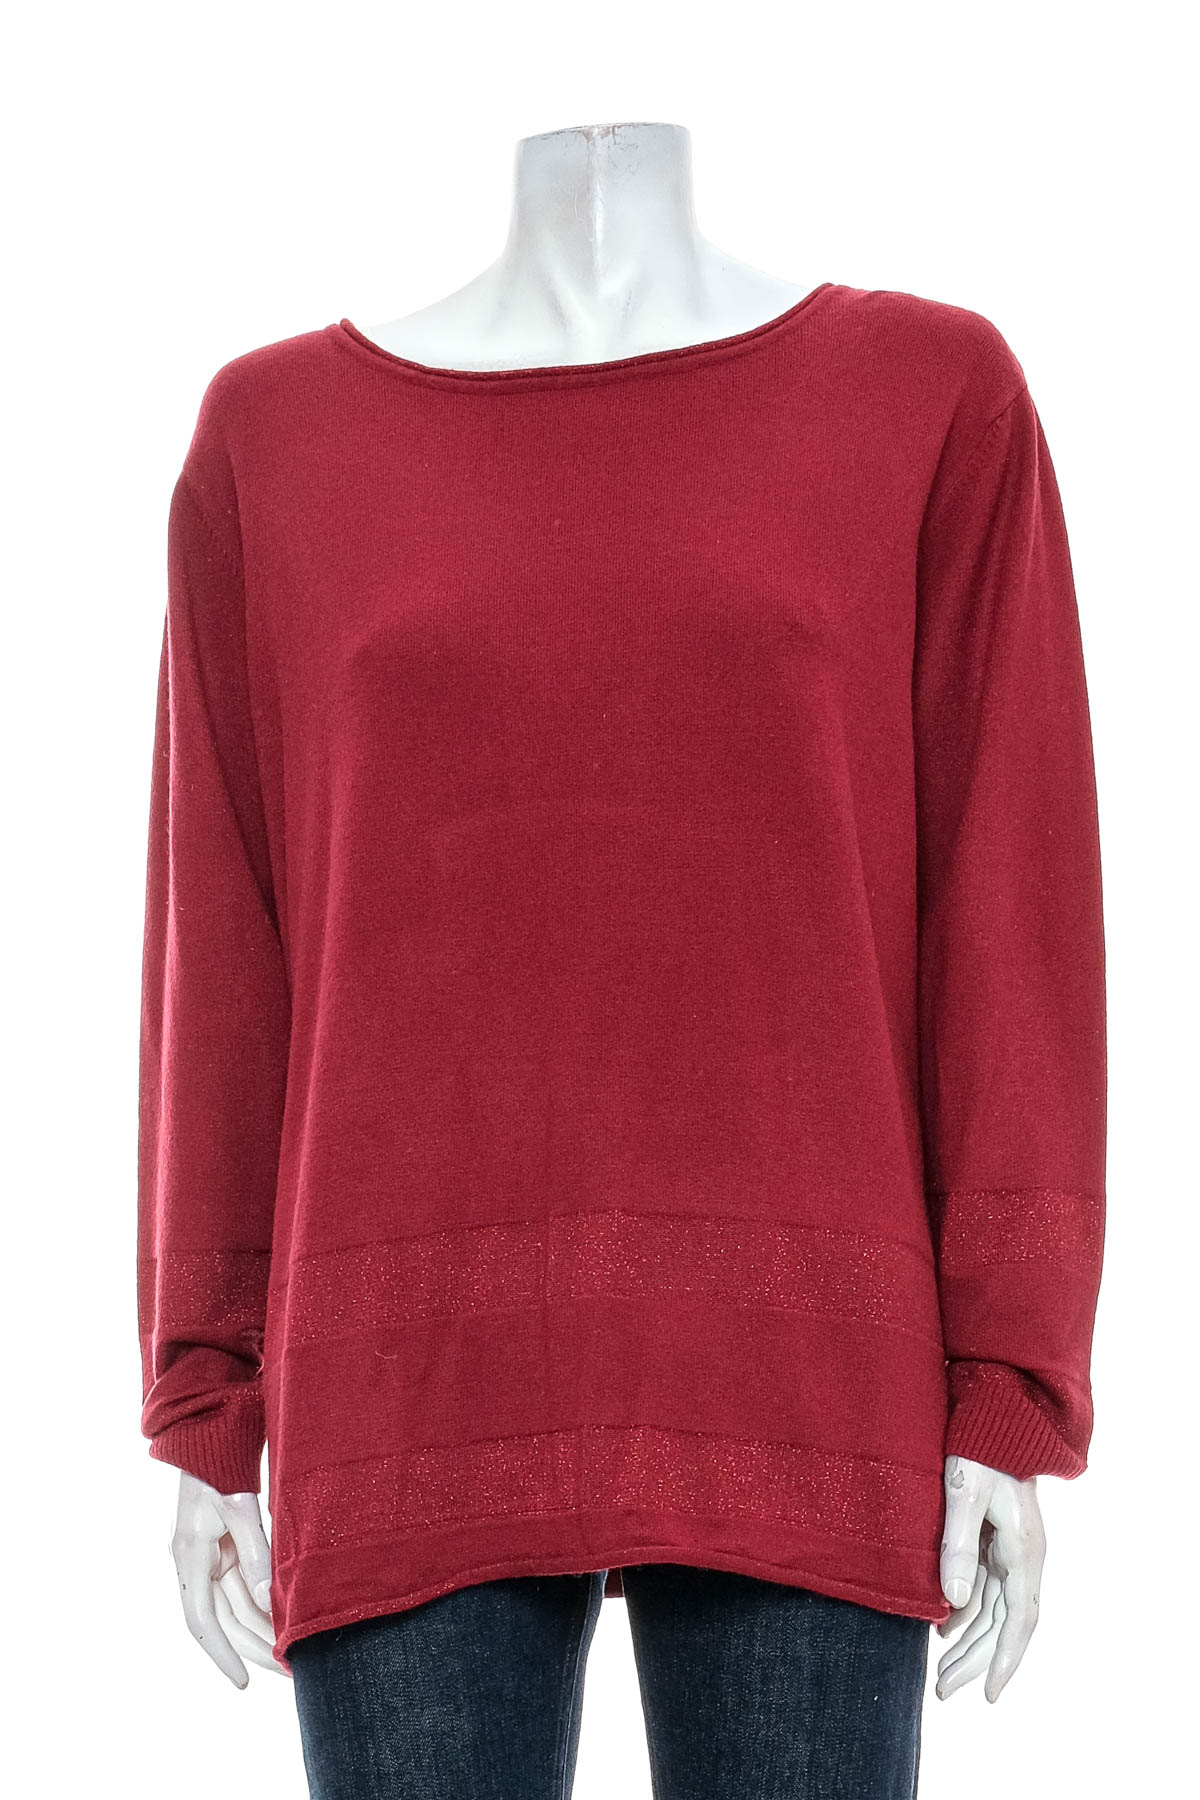 Women's sweater - Bexleys - 0